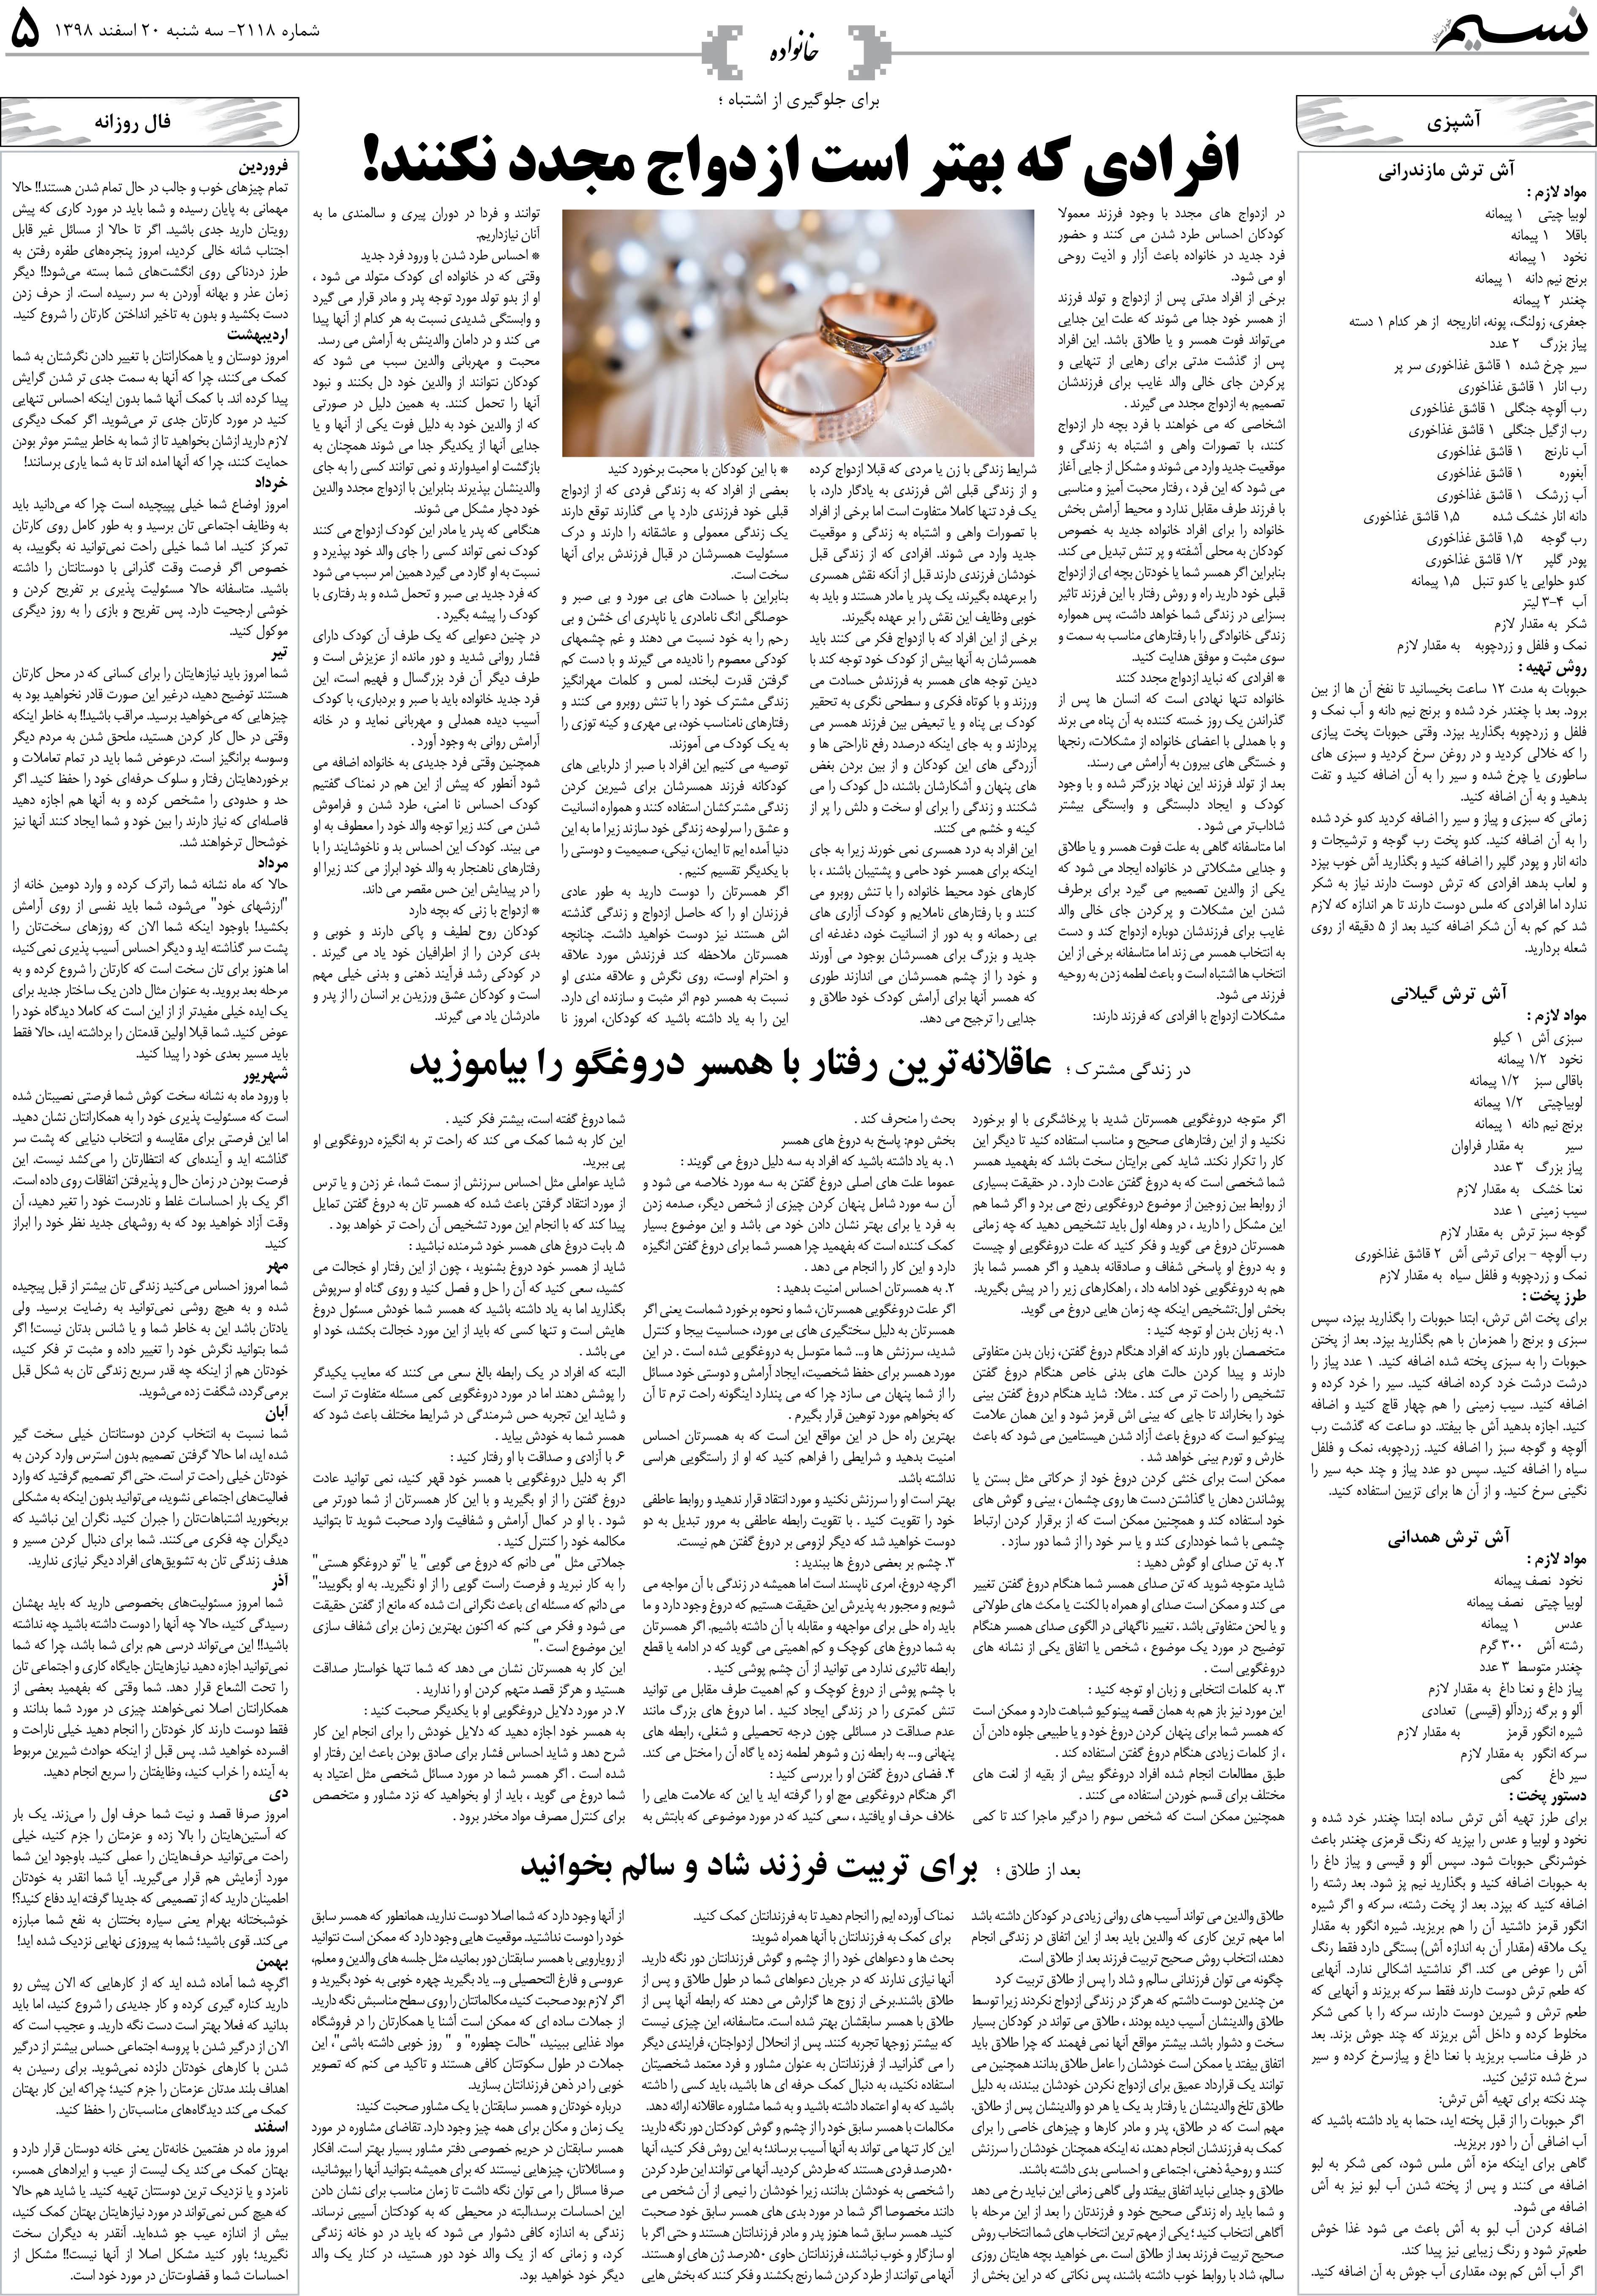 صفحه خانواده روزنامه نسیم شماره 2118